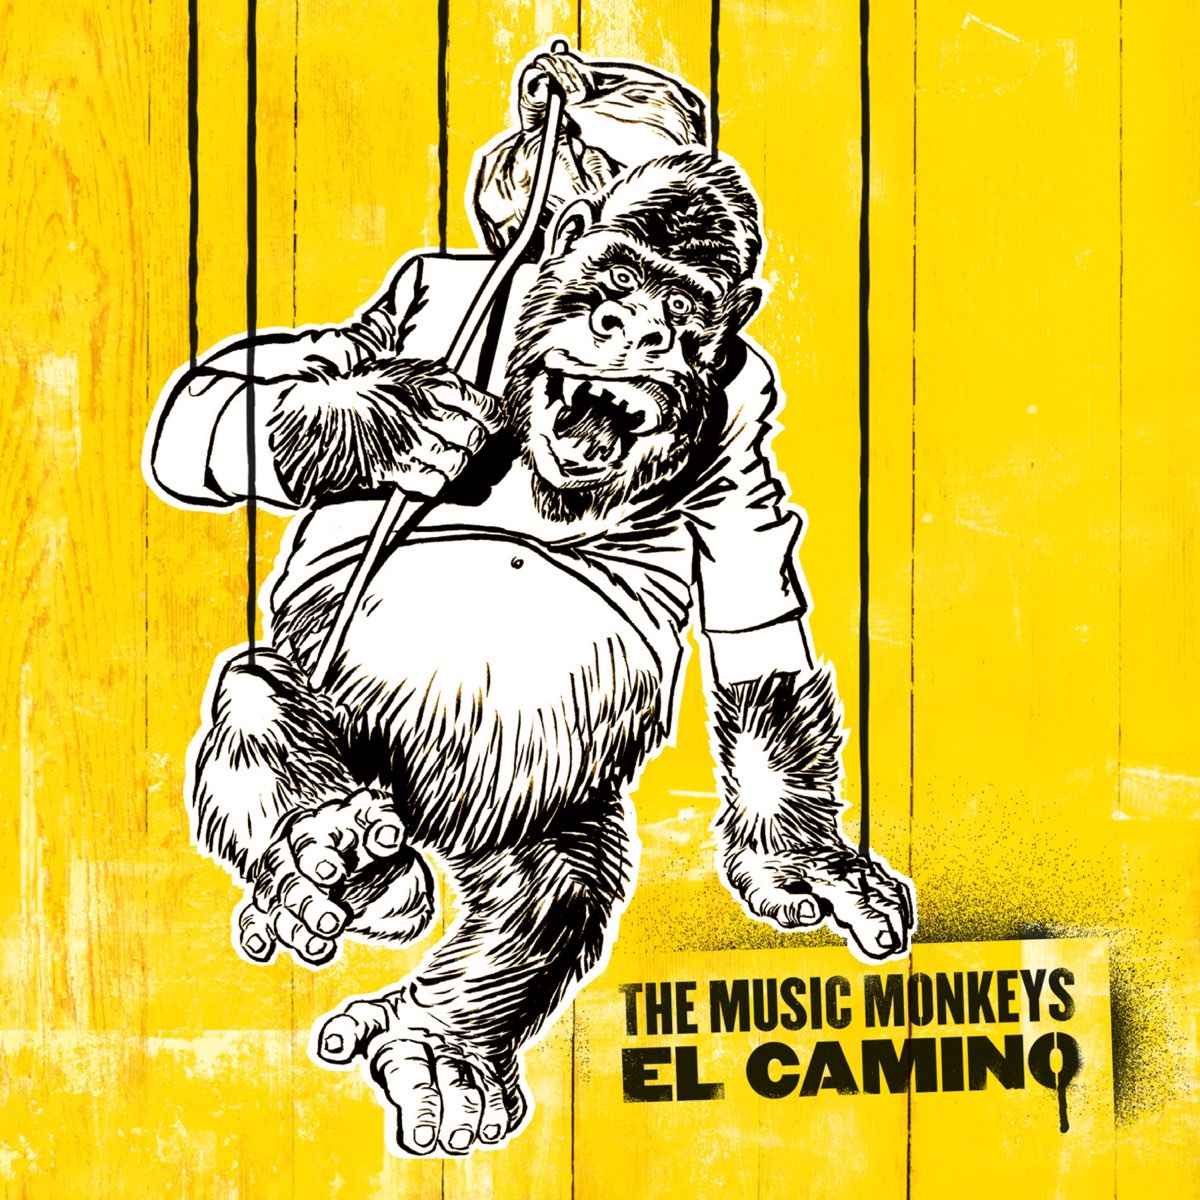 Песня обезьяна подавилась бананом. Эль Monkey. Обезьяна музыка. Комикс обезьян Мелон Мьюзик. Мадригал обезьяна.